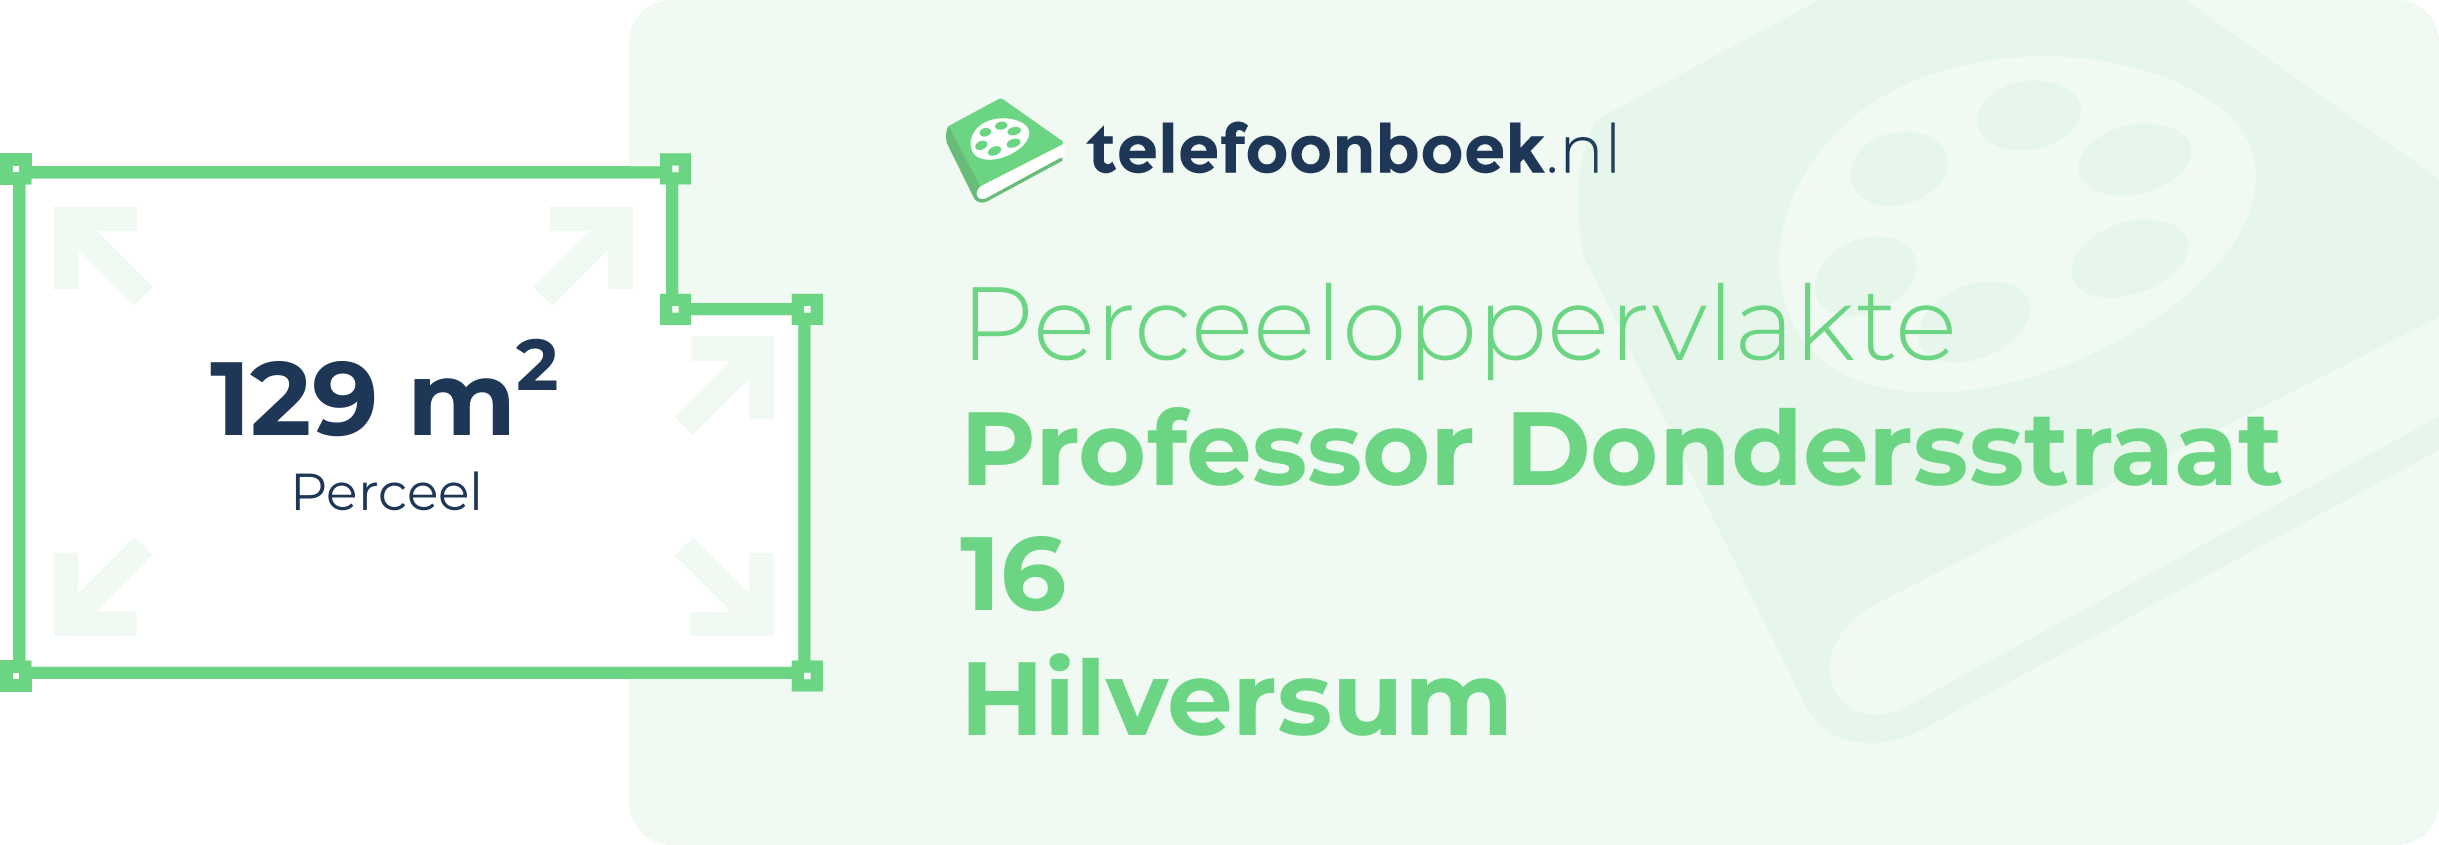 Perceeloppervlakte Professor Dondersstraat 16 Hilversum